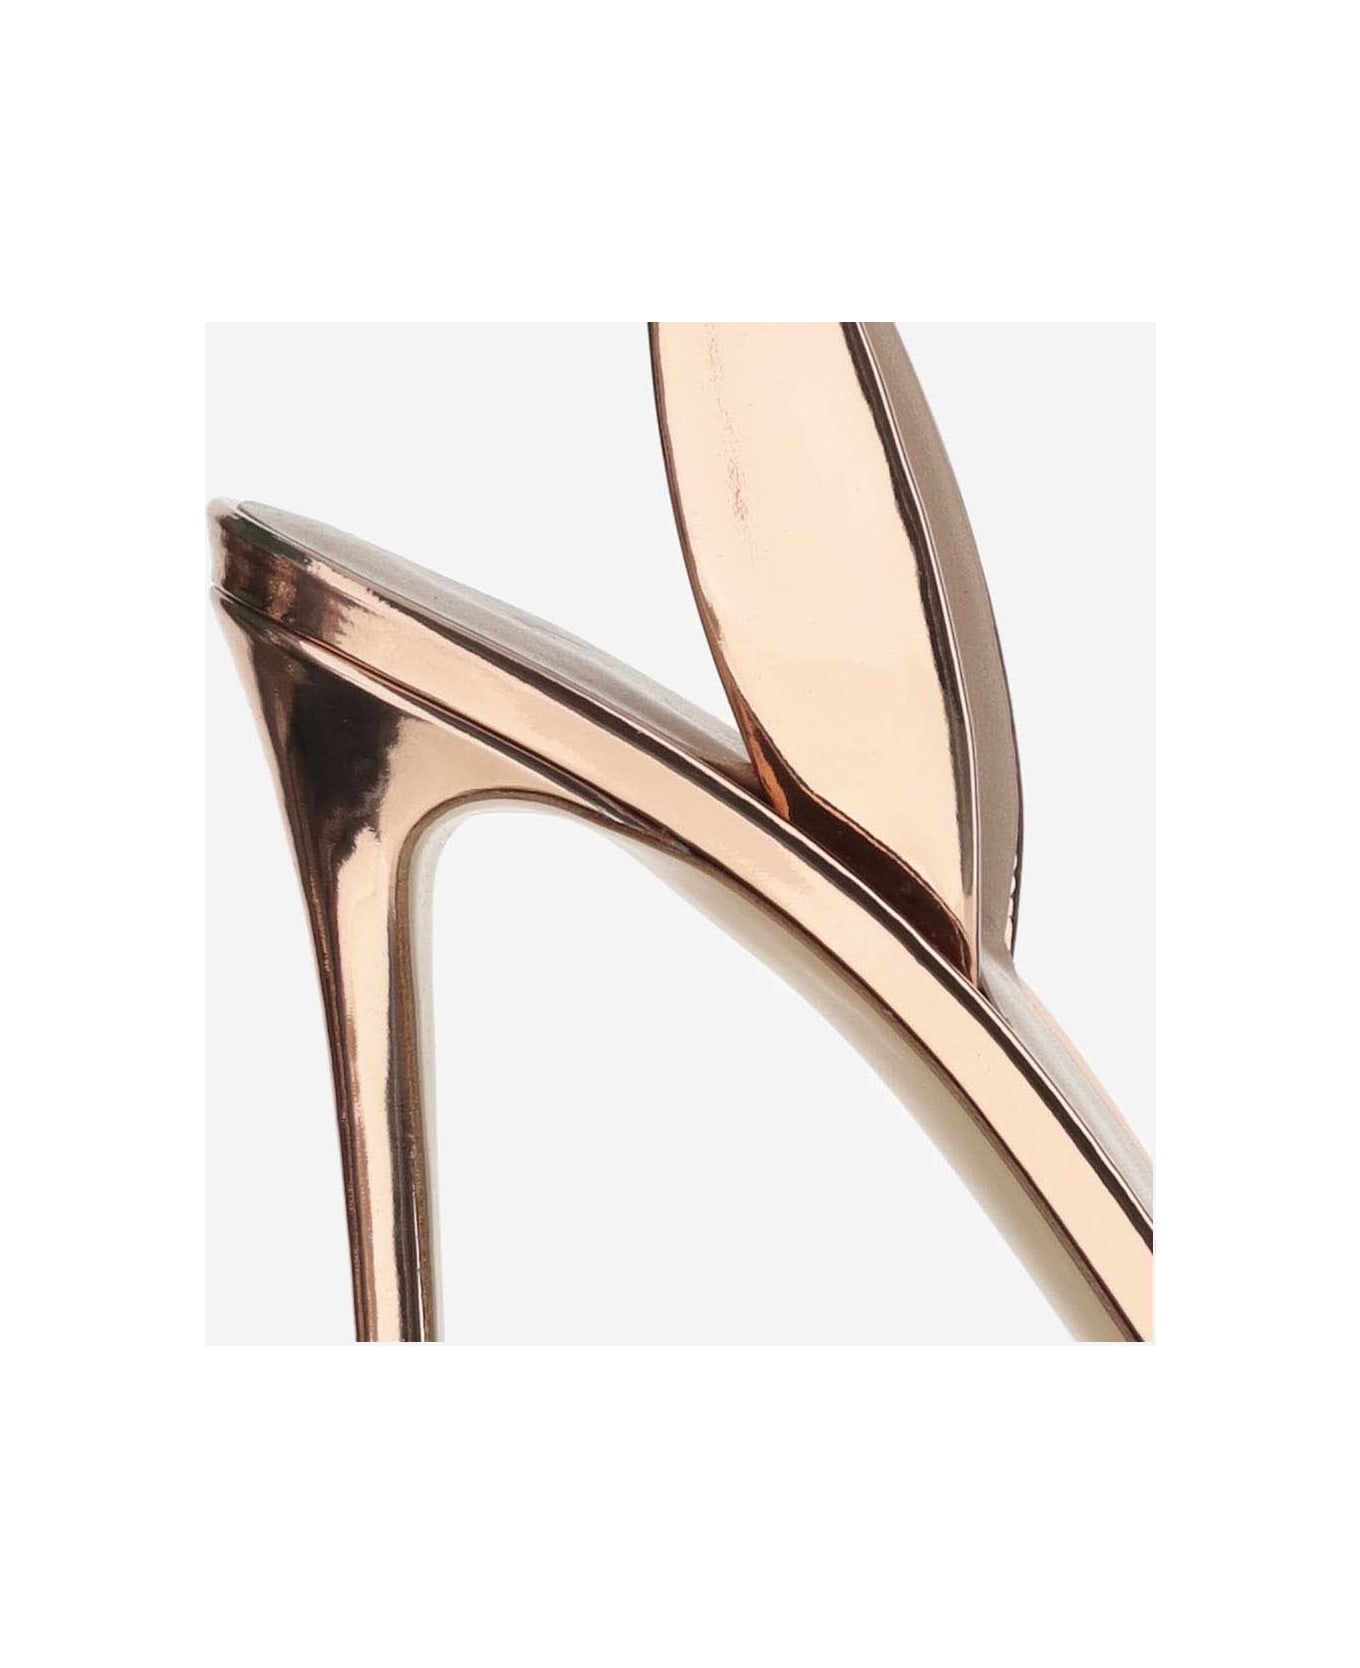 Giorgio Armani Laminated Leather Heeled Sandals - Golden